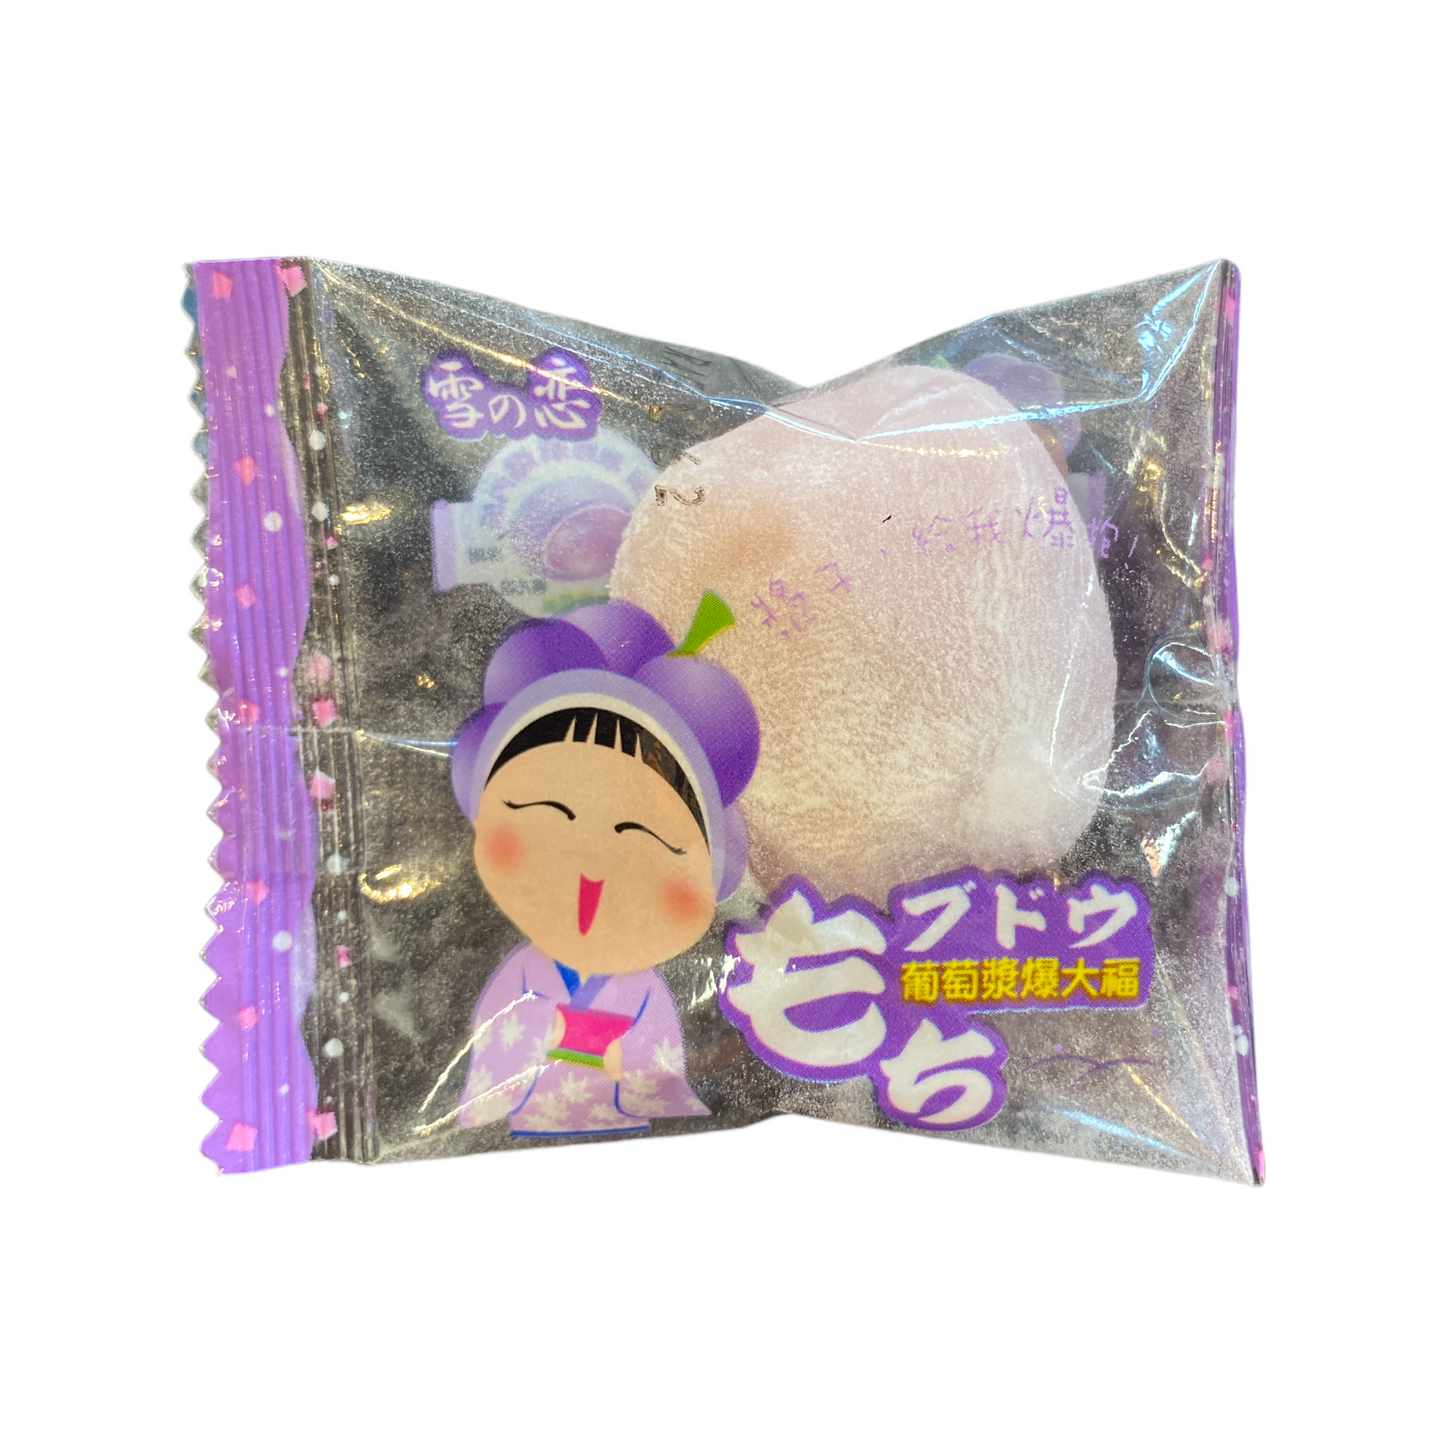 Yuki & Love Daifuku - Grape Flavoured Mochi  - SINGLE PIECE/INDIVIDUALLY WRAPPED